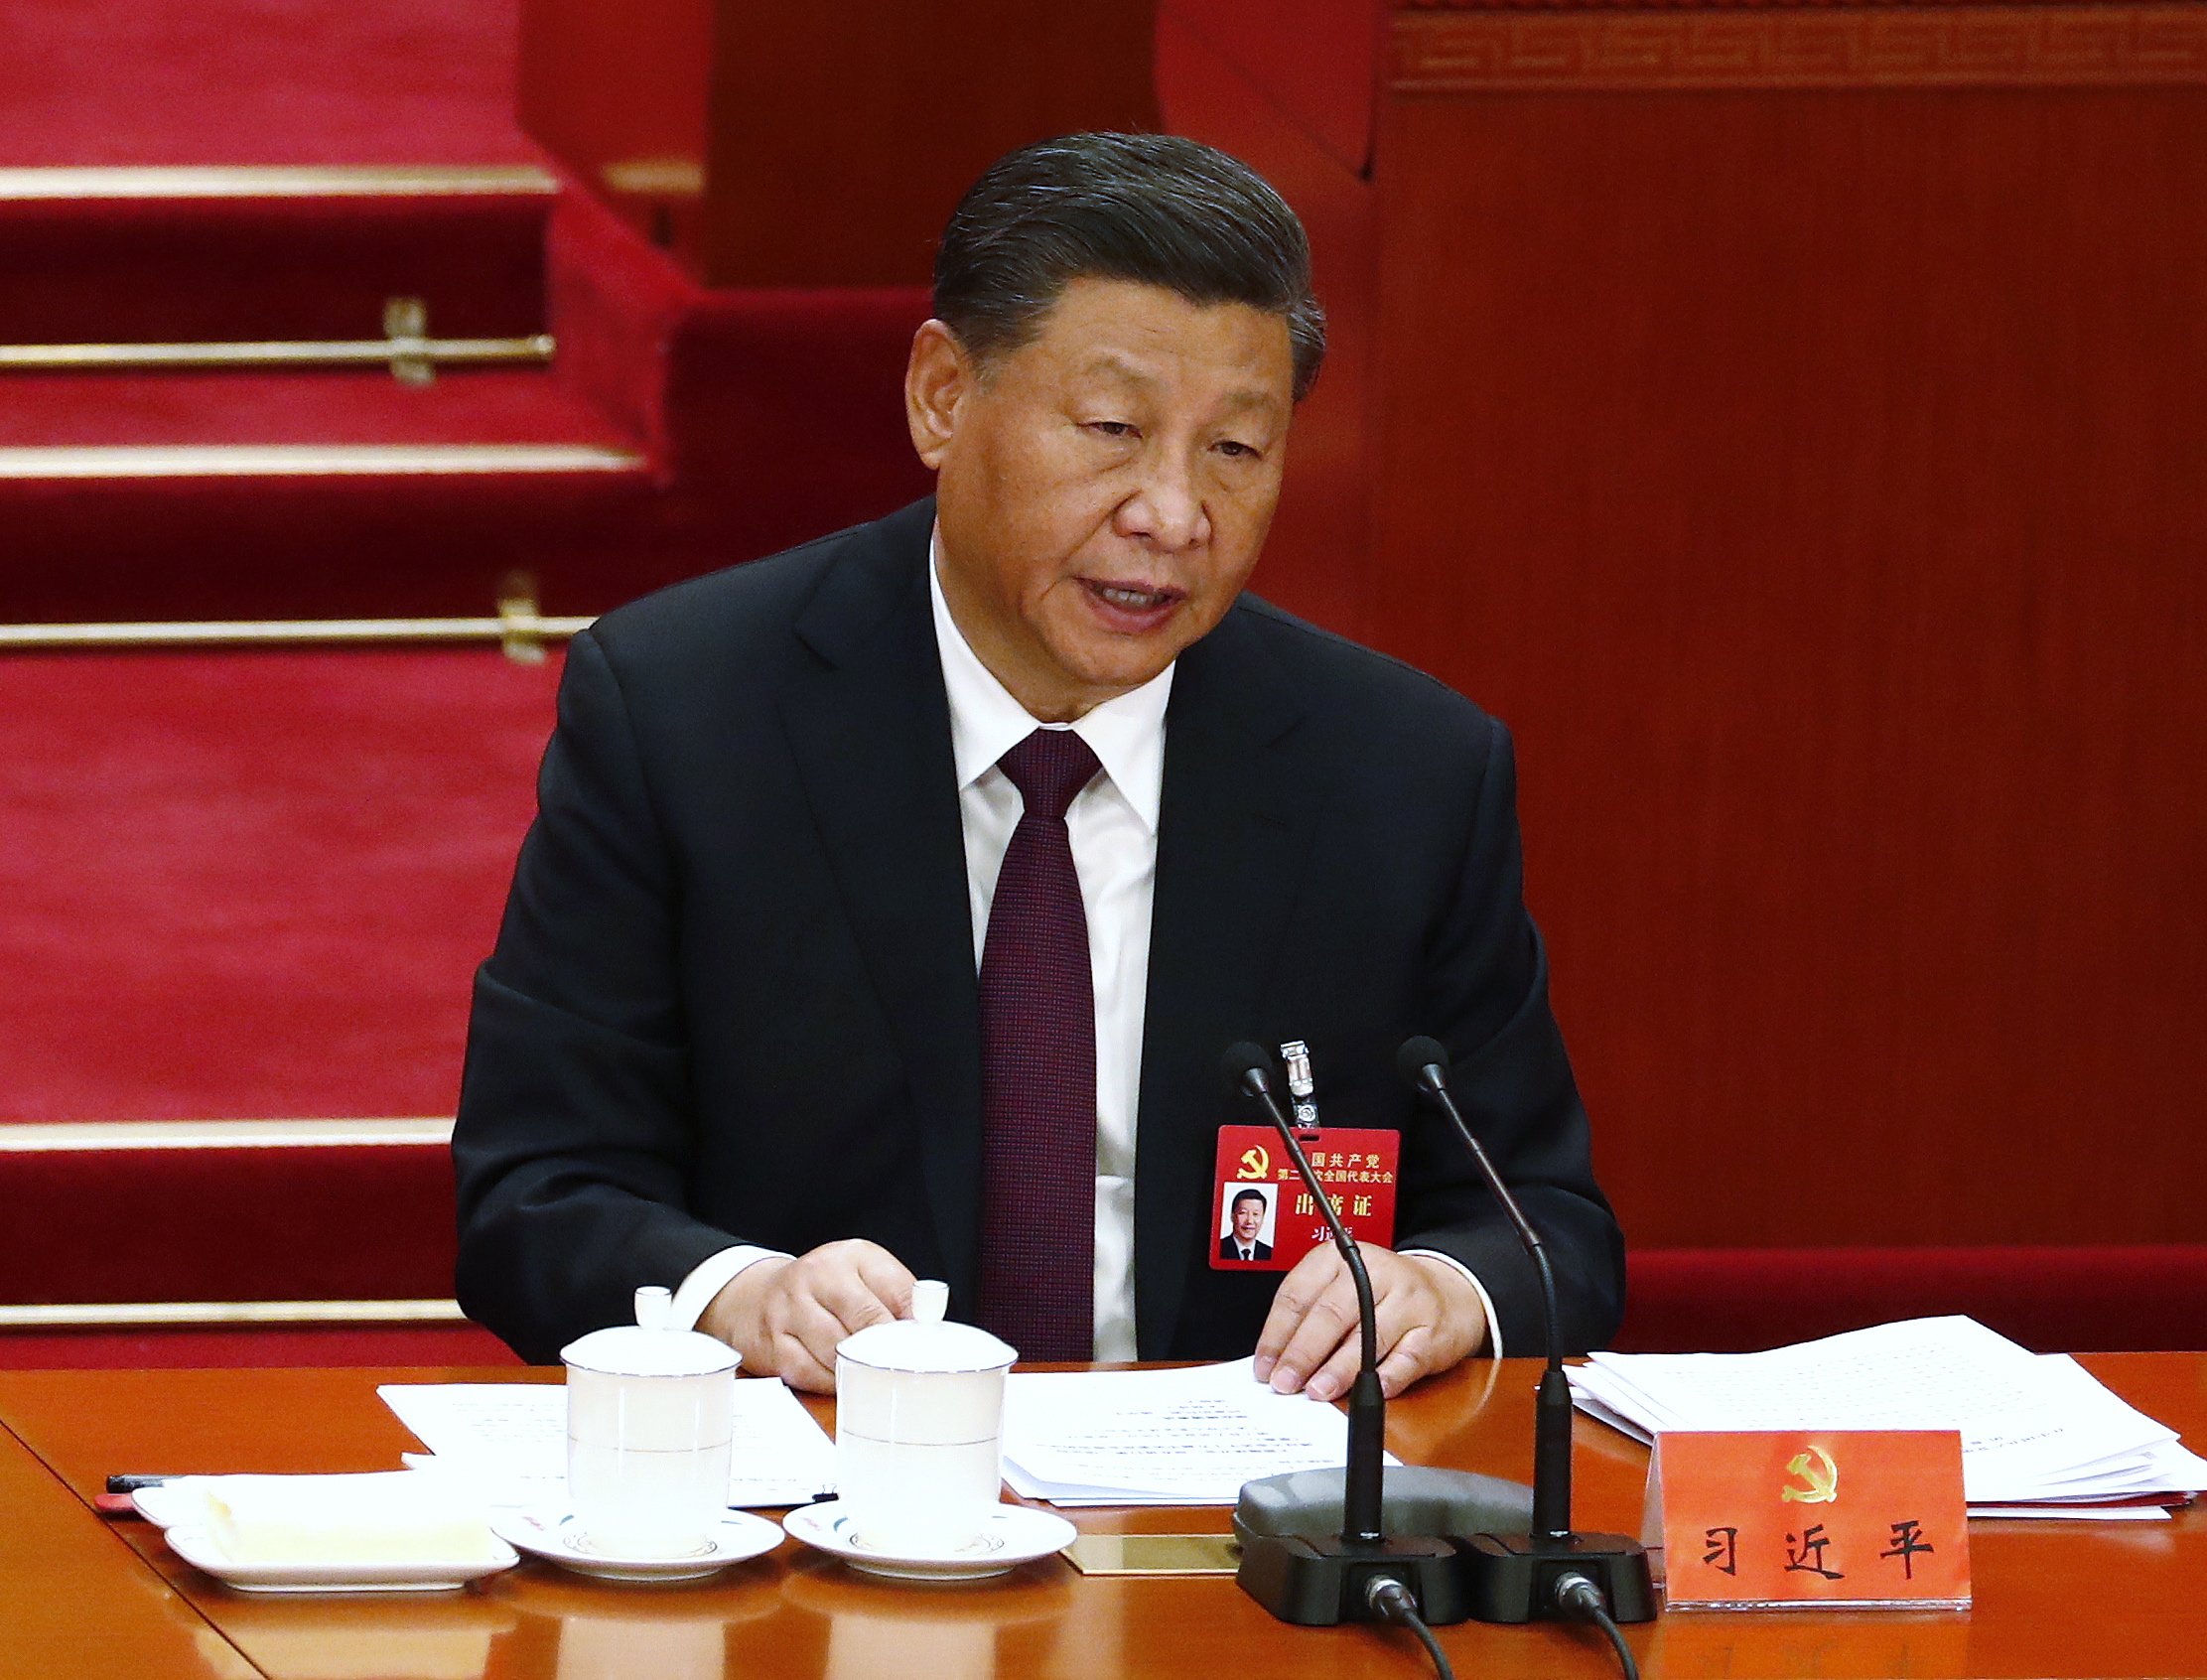 Per què és gairebé impossible que hi hagi protestes a la Xina contra Xi Jinping?